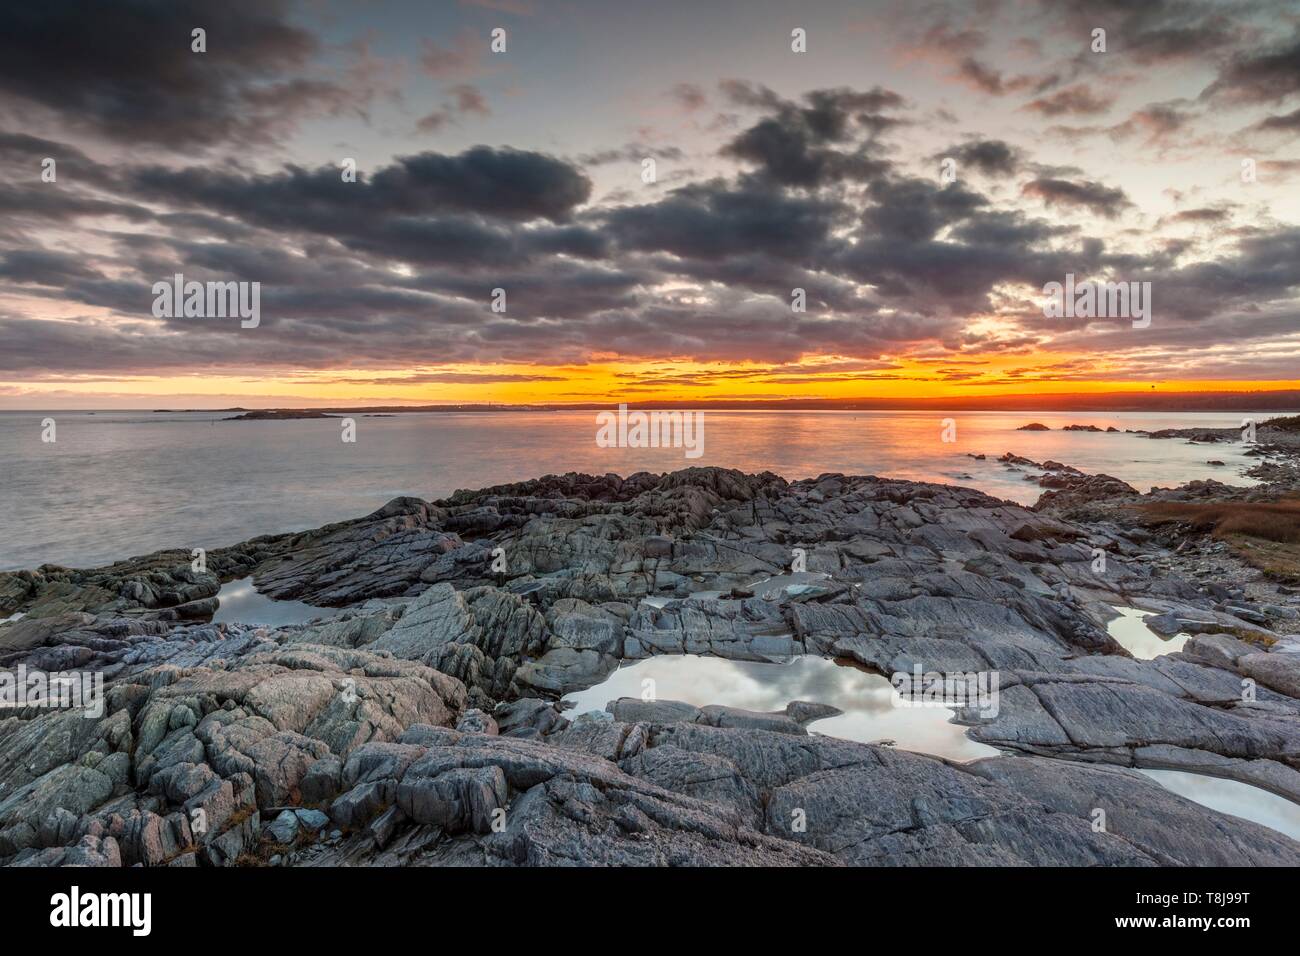 Canada, Nova Scotia, Louisbourg, view of the Atlantic Ocean, dusk Stock Photo